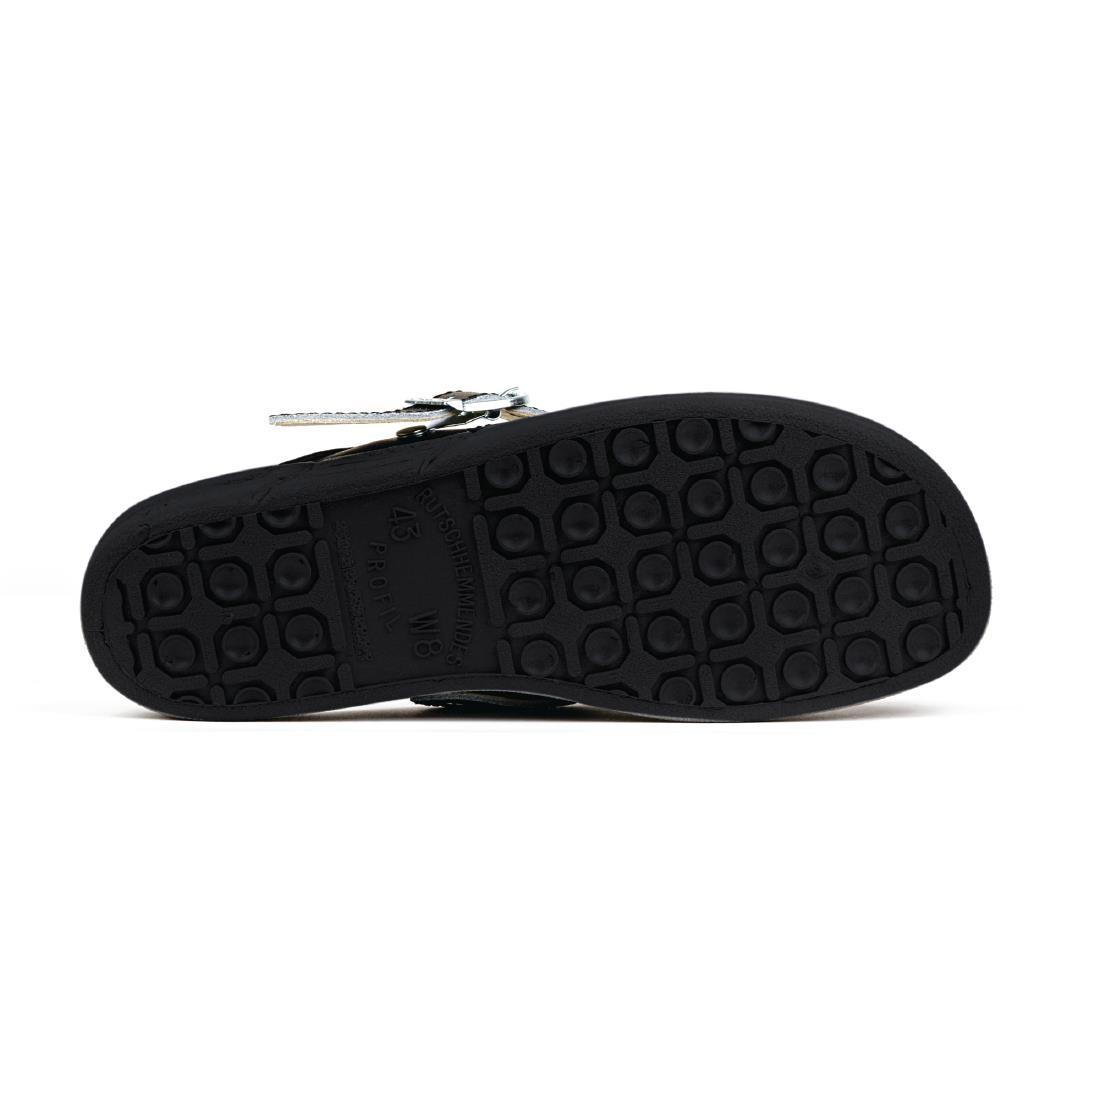 Abeba Microfibre Clogs Black Size 45 - A898-45  - 4